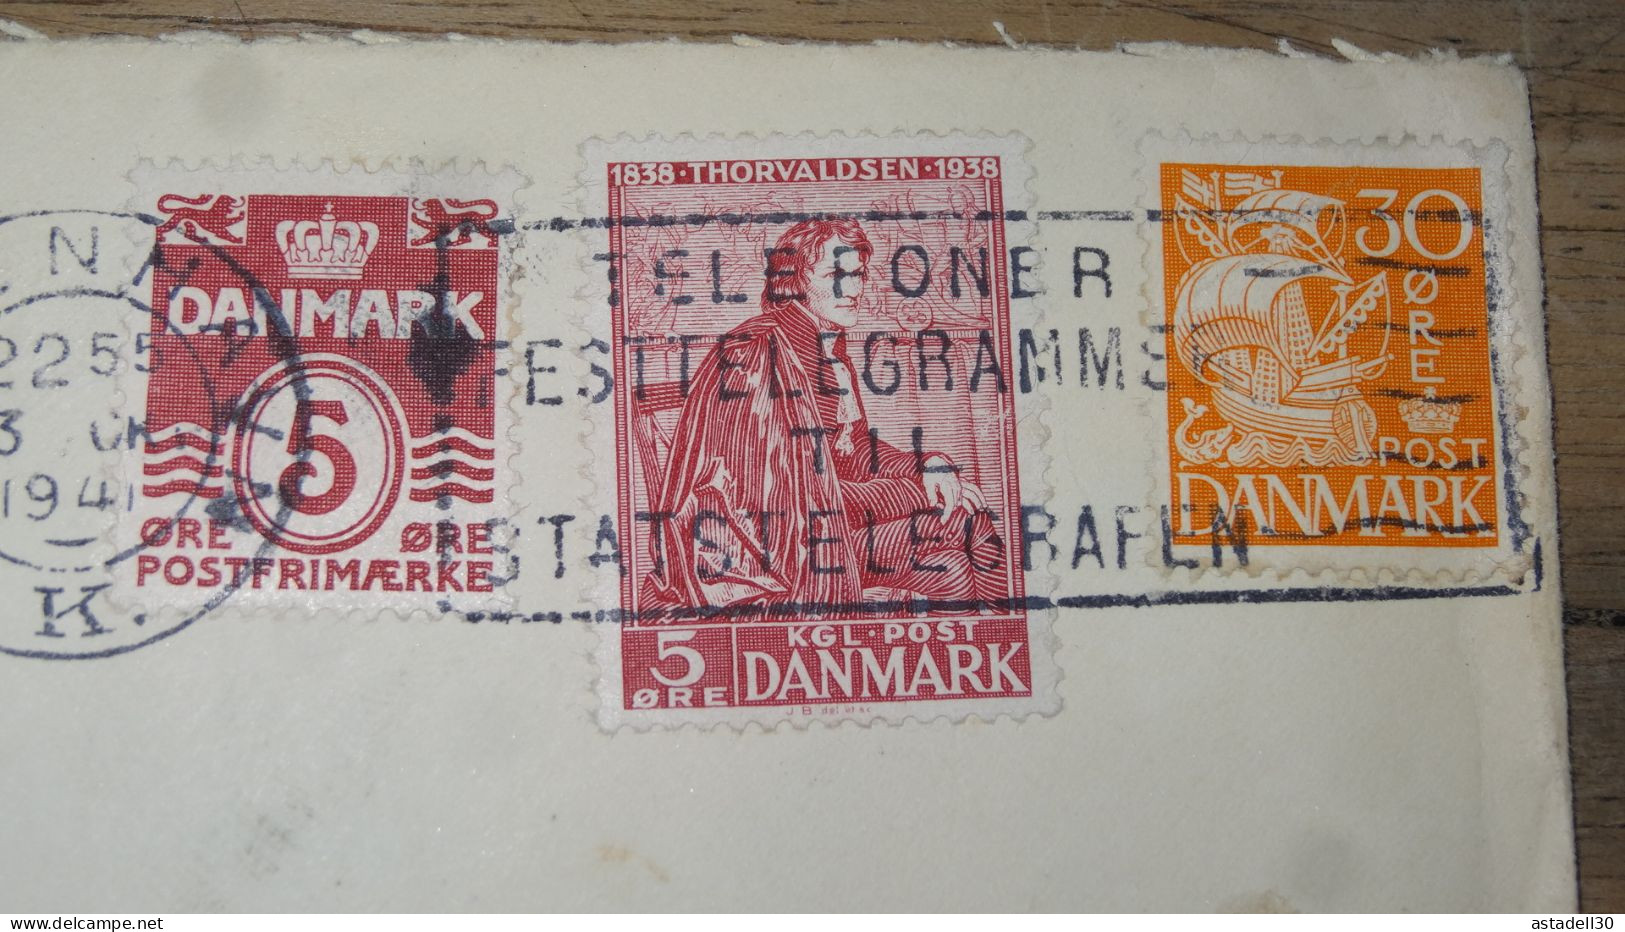 Enveloppe DANMARK, Censored, 1941  ............ Boite1 .............. 240424-248 - Lettres & Documents